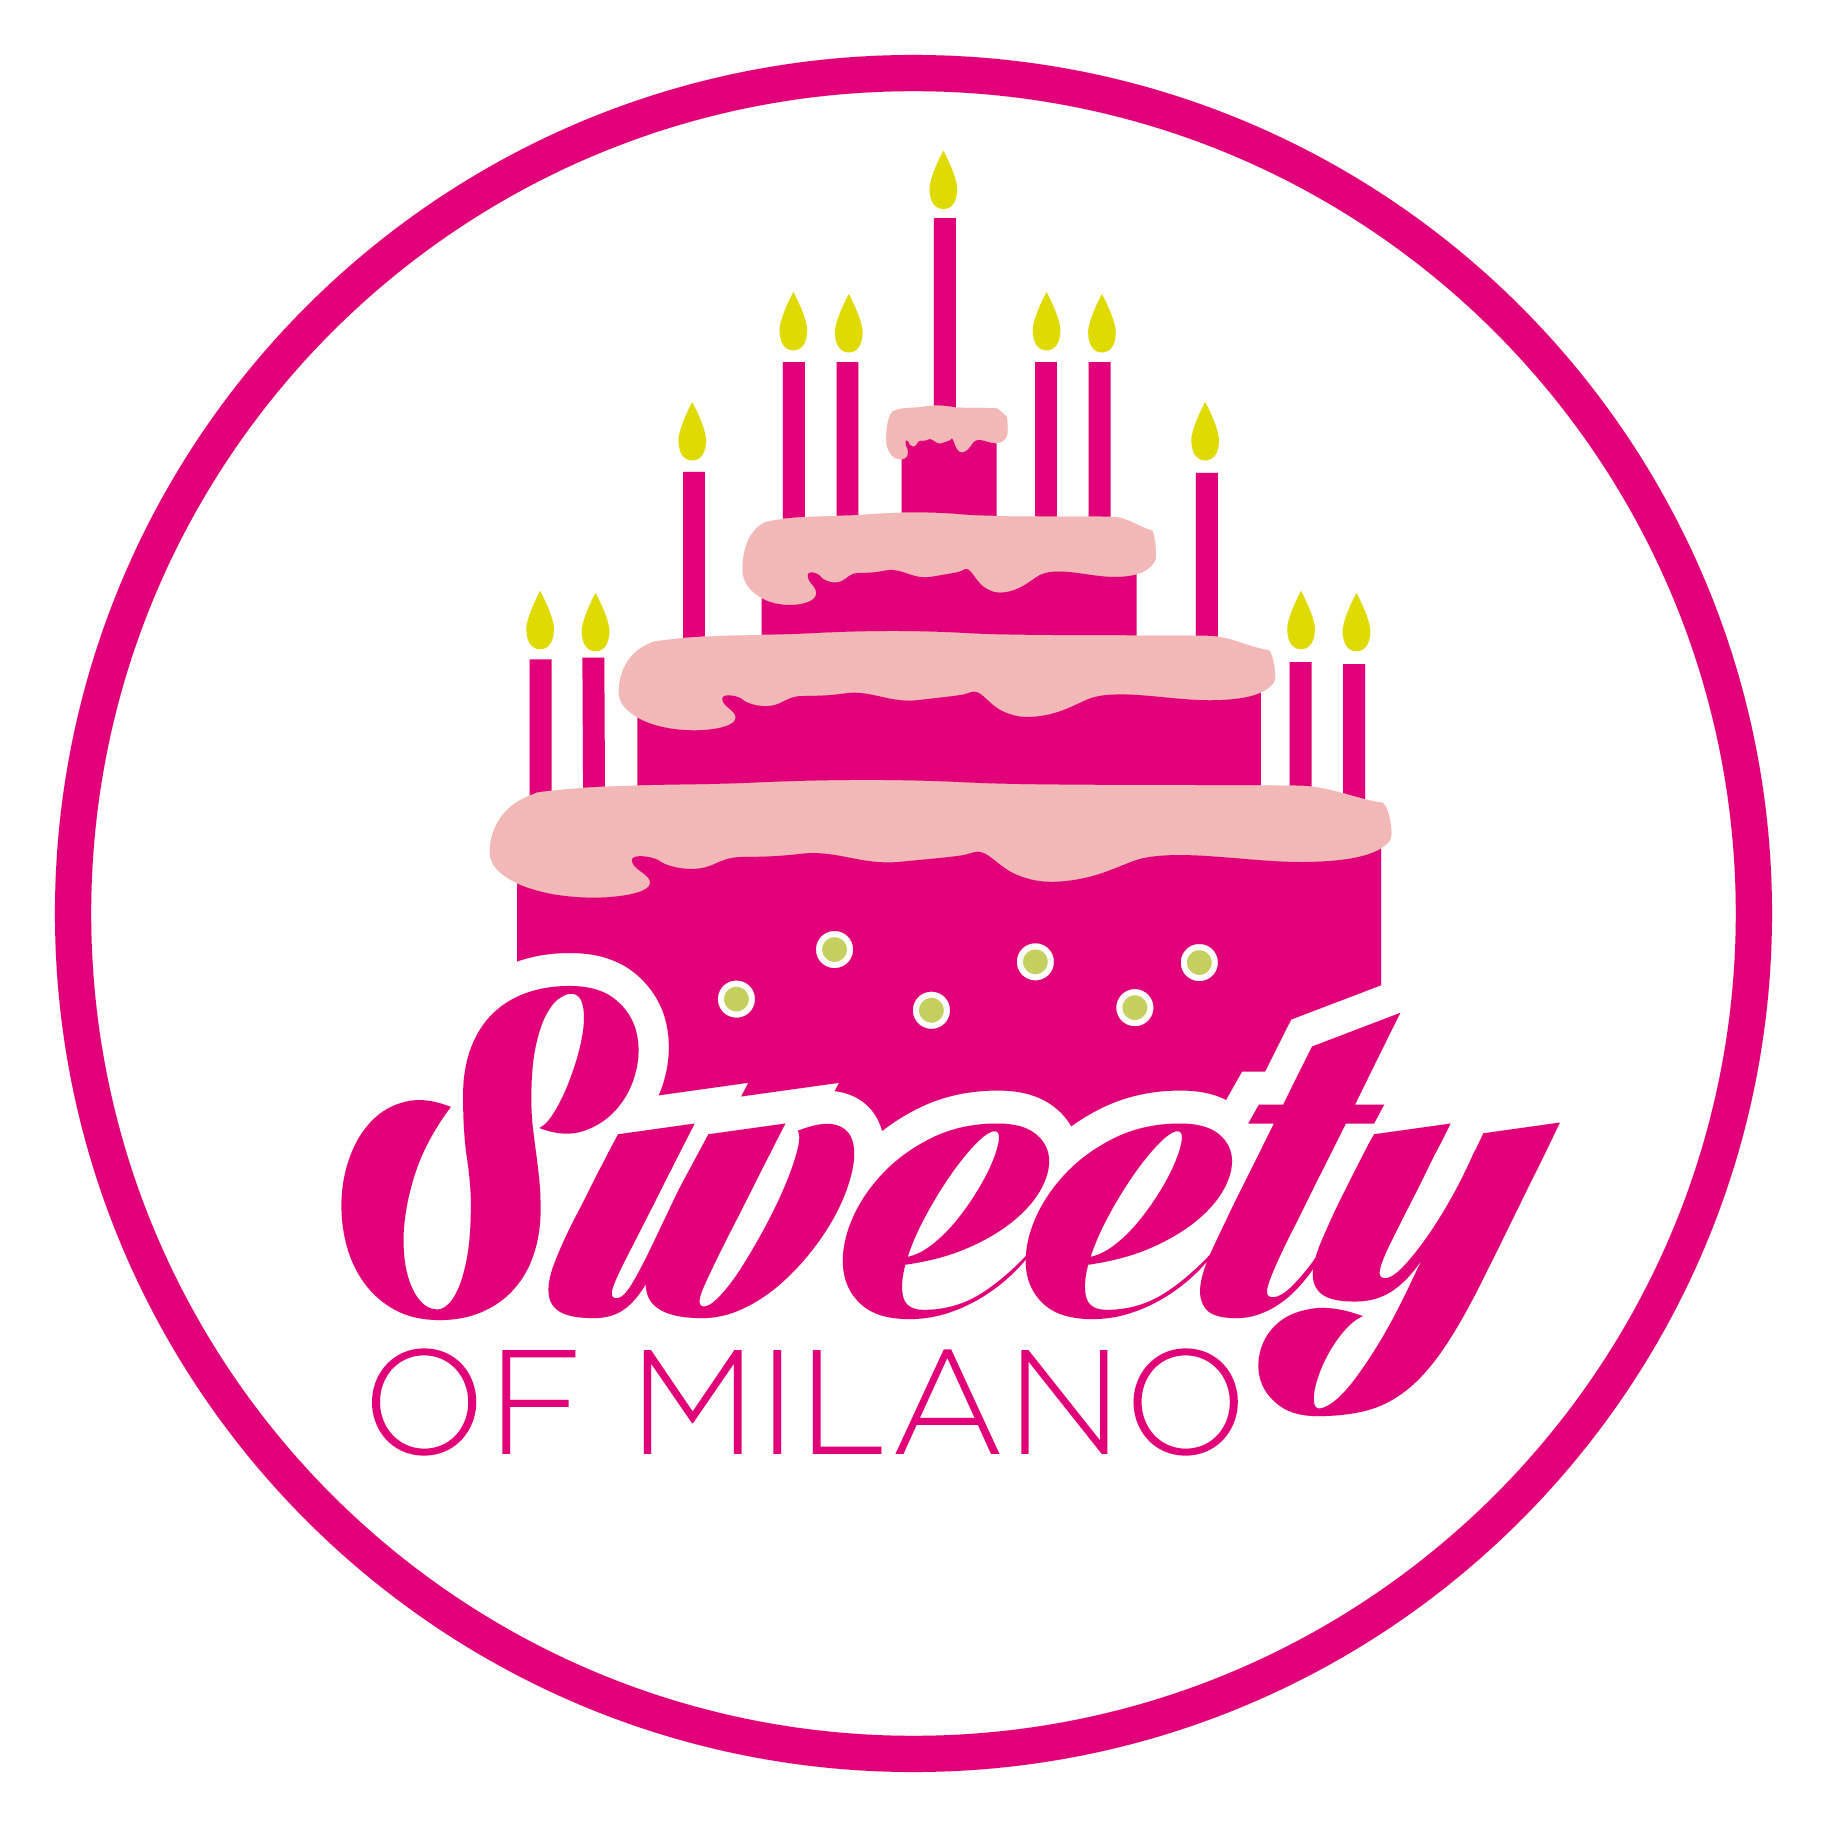 La migliore pasticceria italiana in mostra a Sweety of Milano